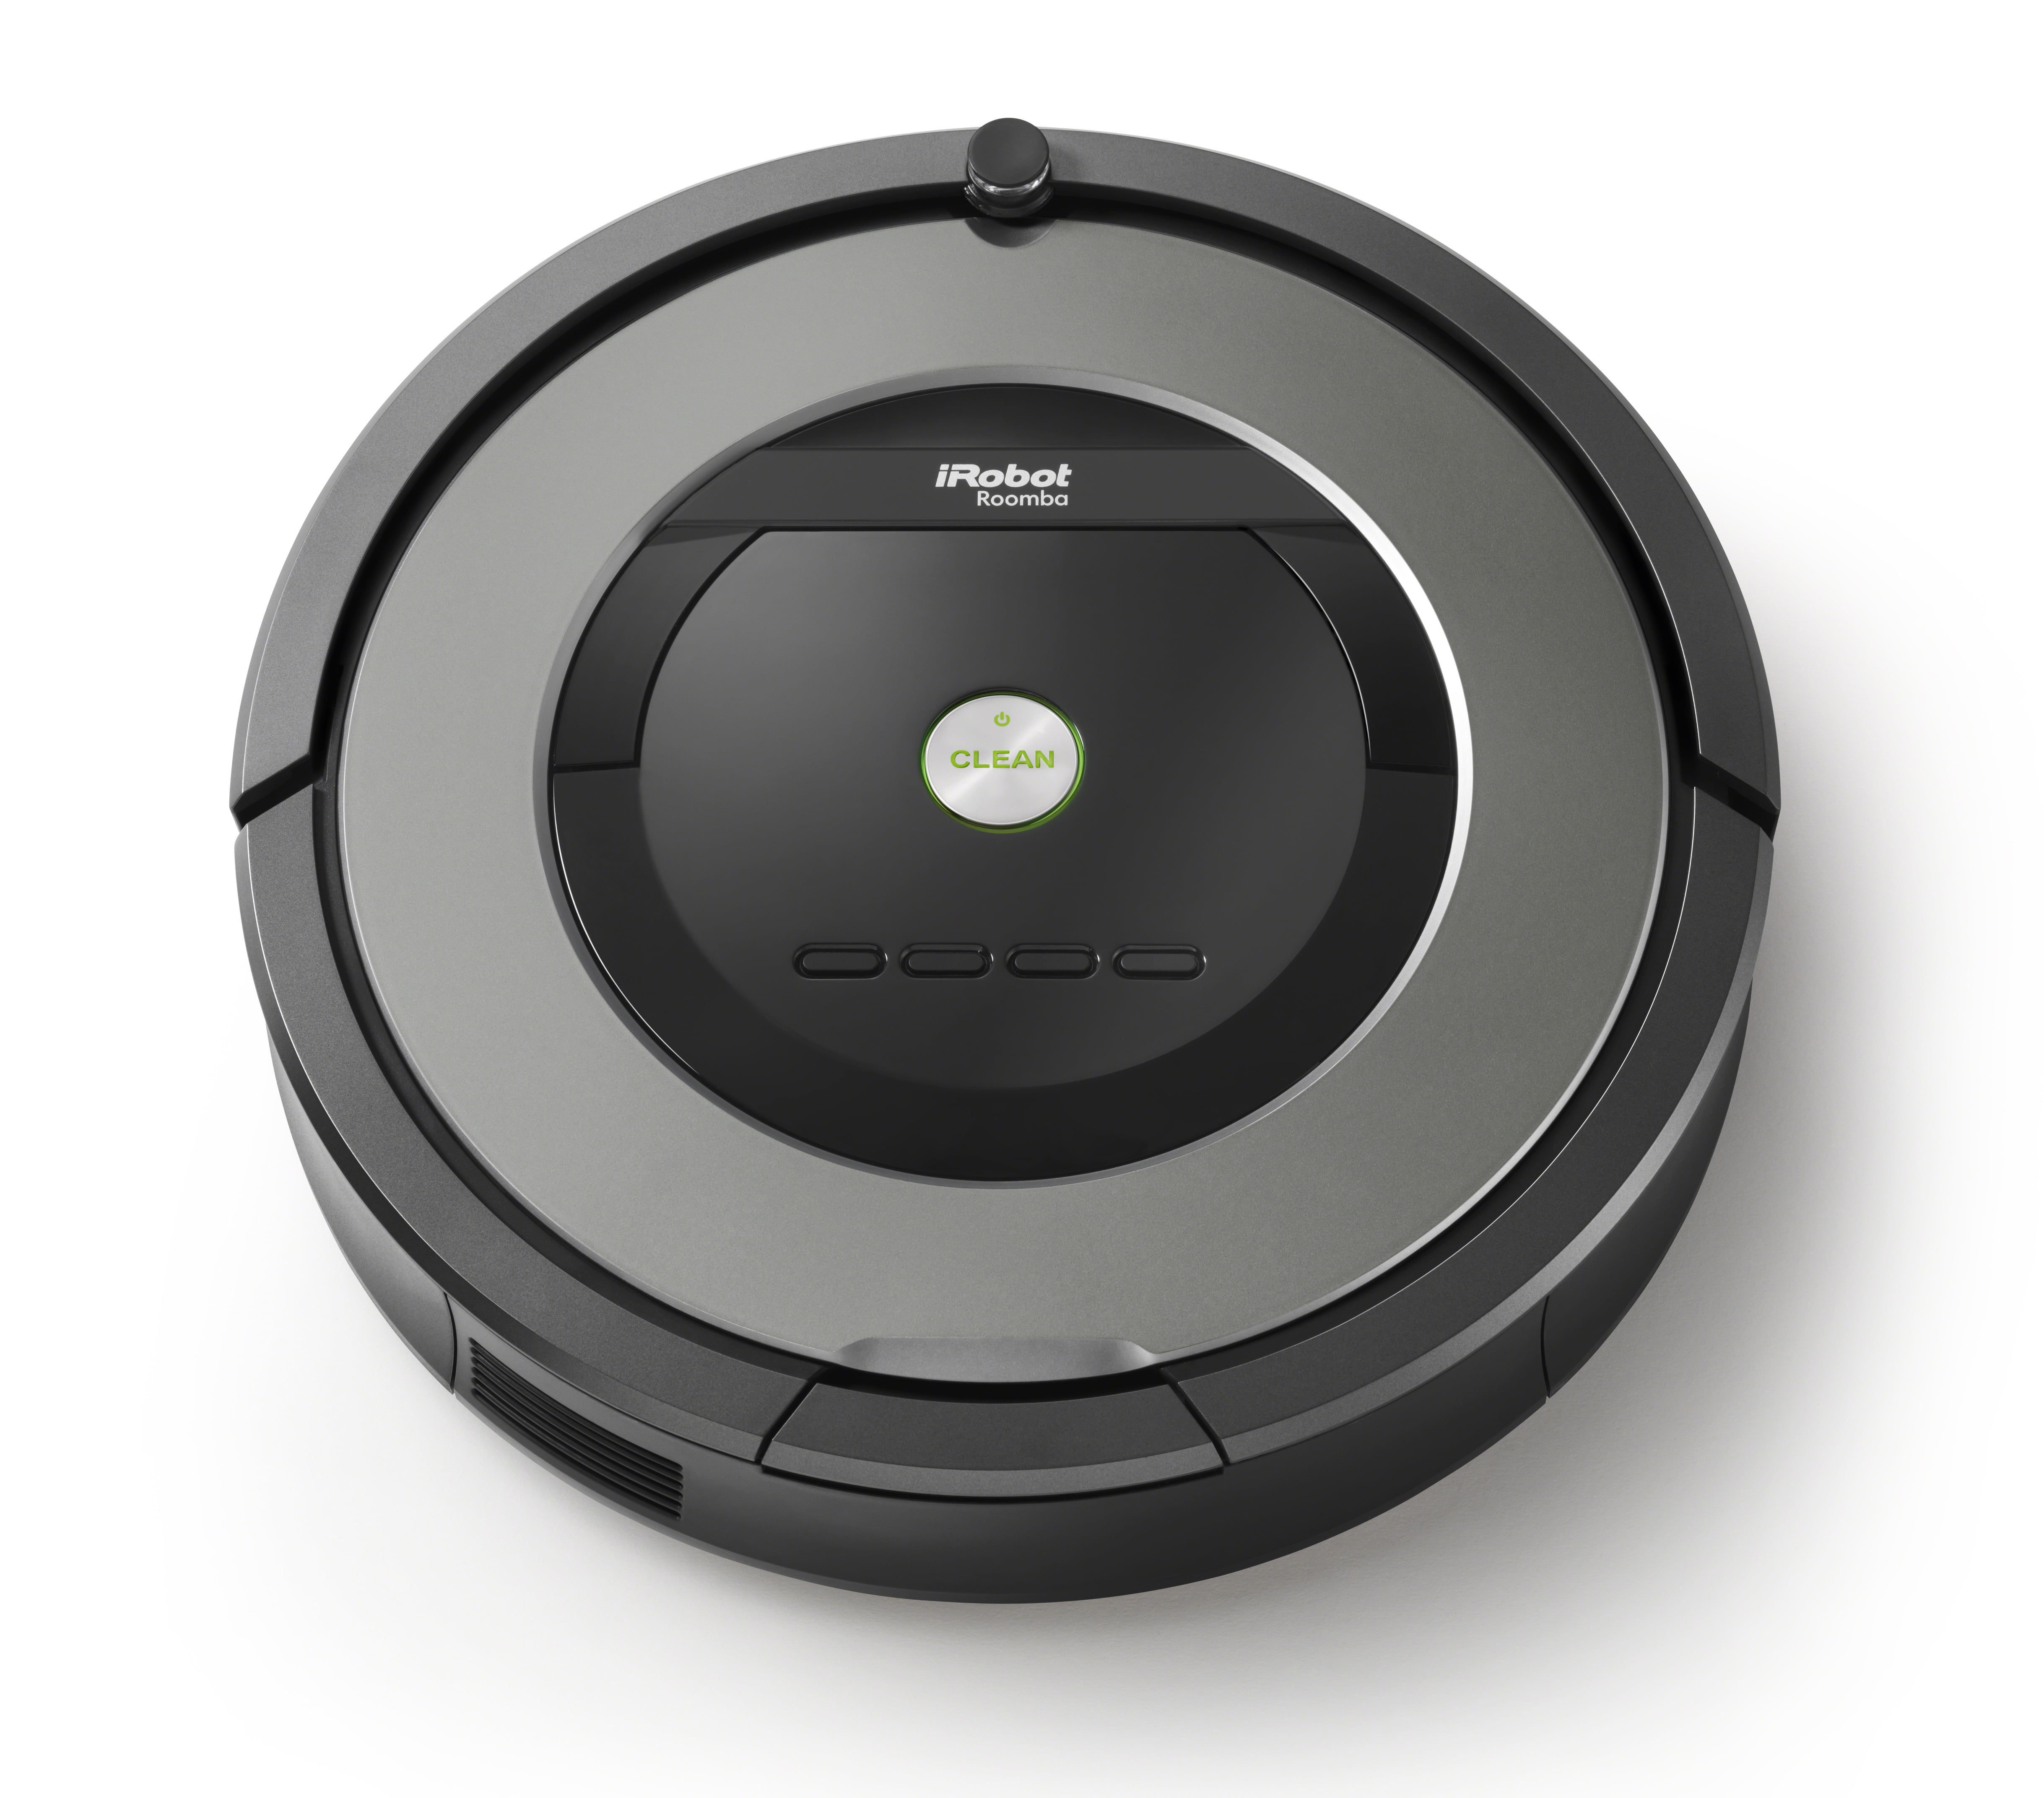 iRobot Roomba 877 Vacuum Cleaning Robot - Walmart.com ...